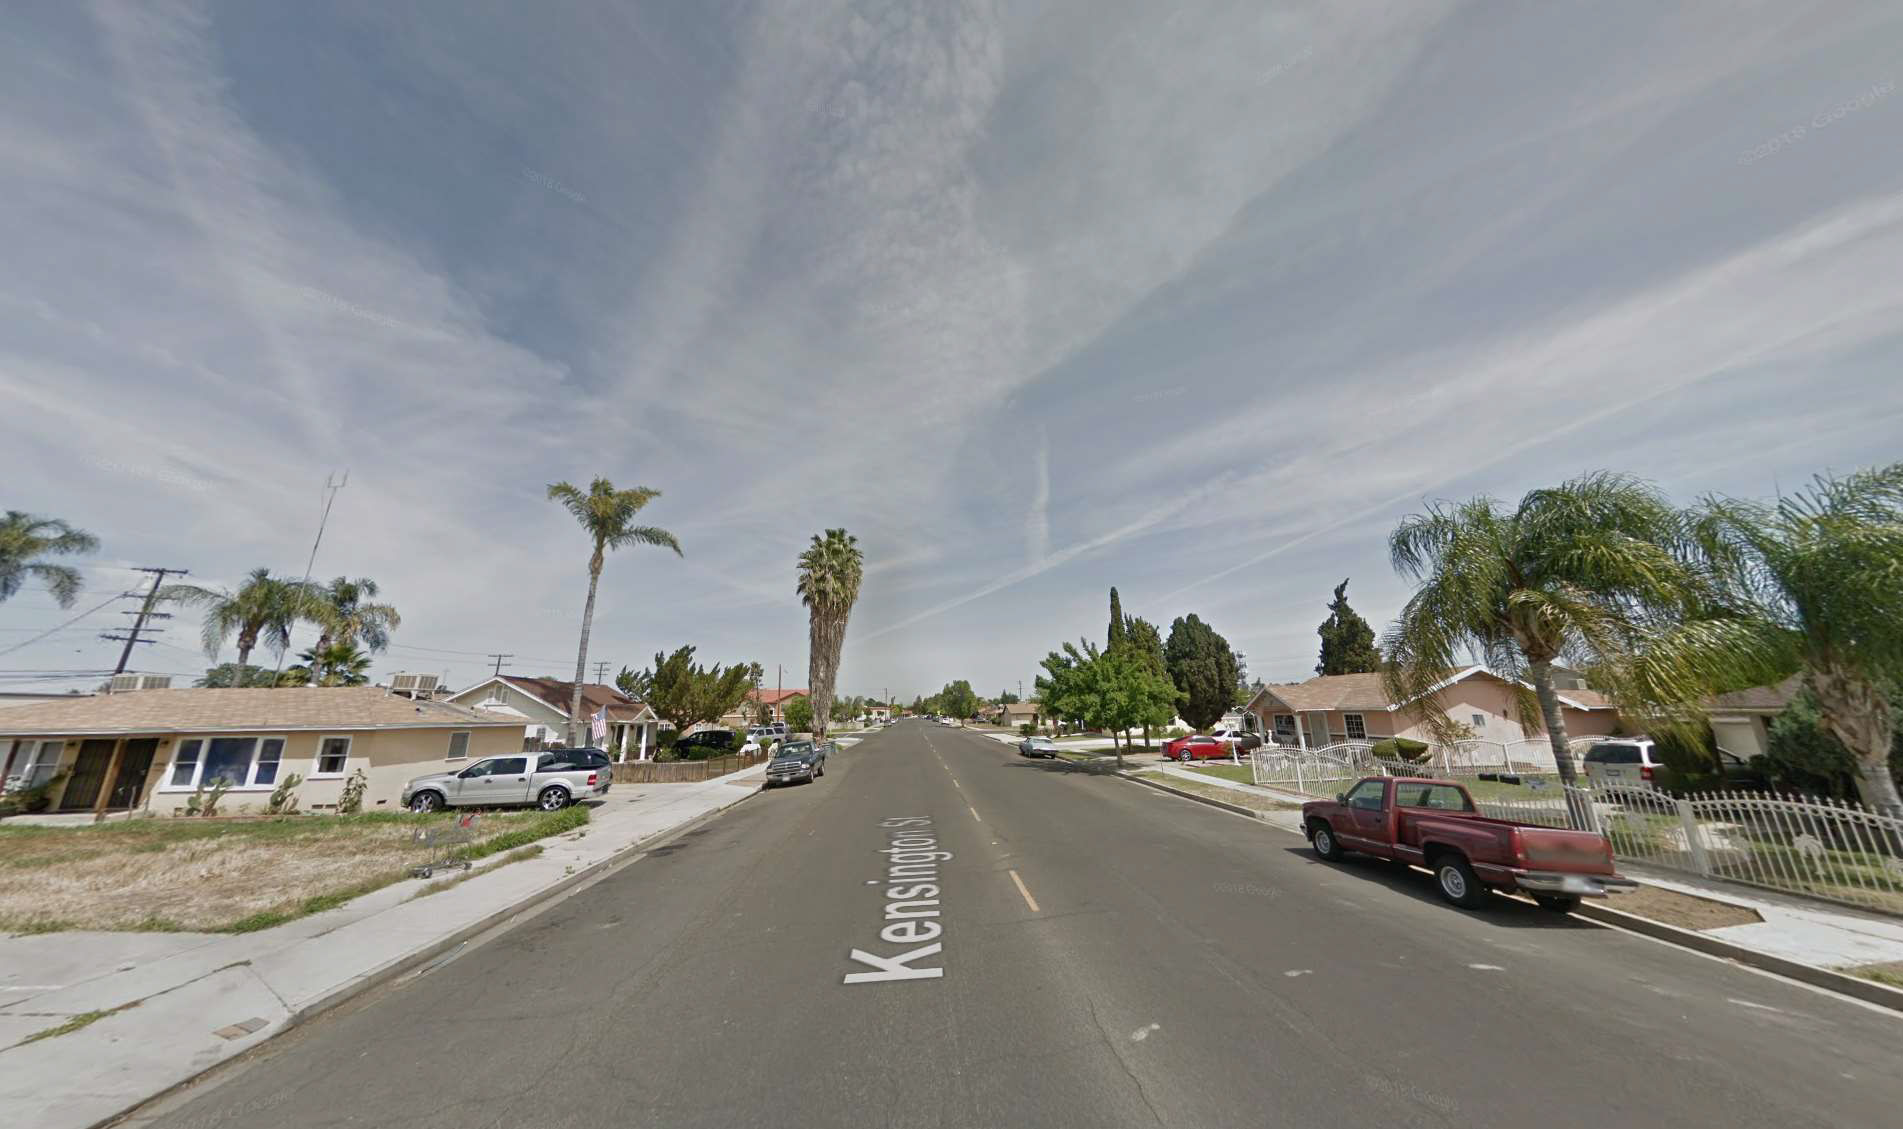 Street view of average neighborhood in Bakersfield